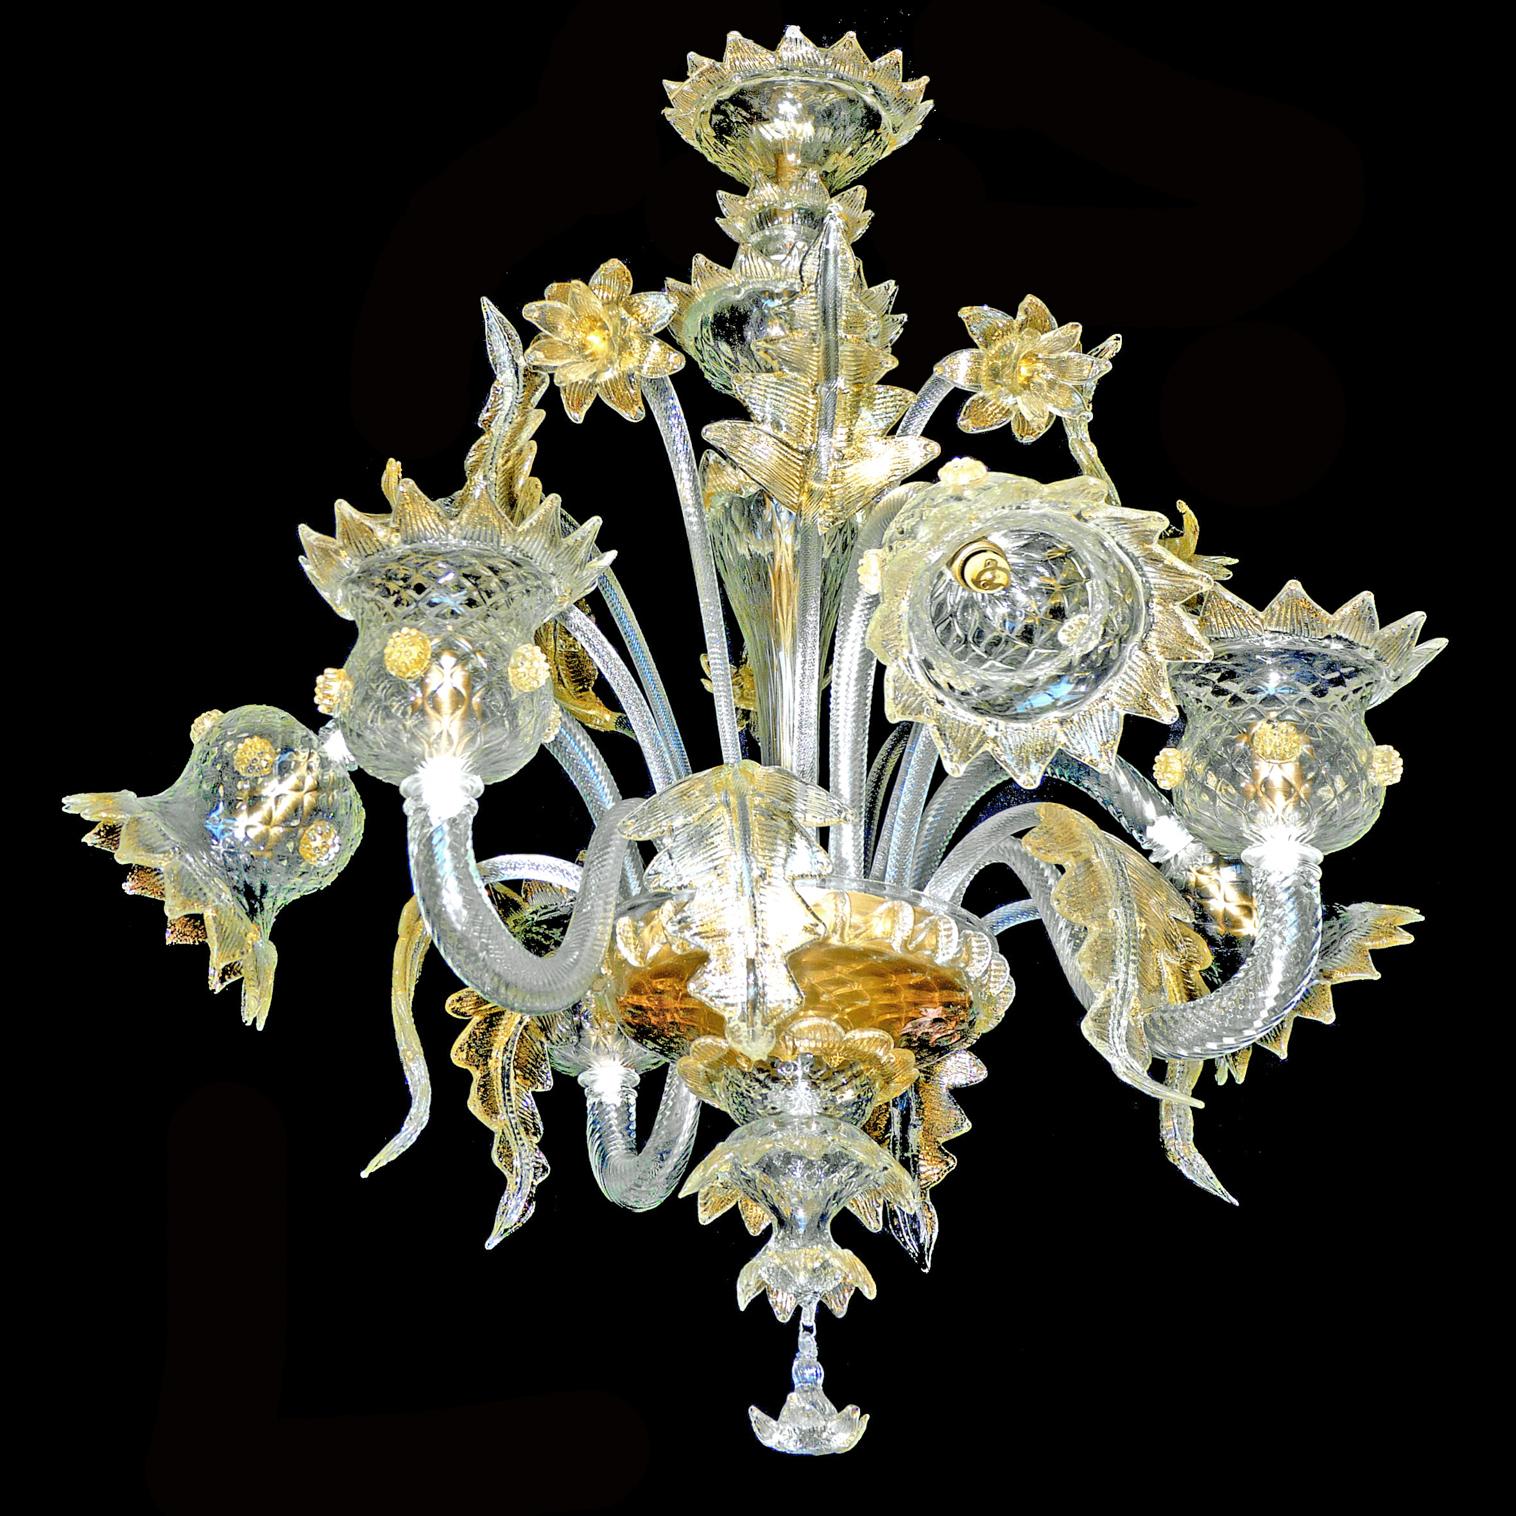 Beeindruckender und seltener venezianischer Murano-Kronleuchter mit Goldstaub. Diese wunderschöne Leuchte hat mundgeblasenes, strukturiertes, funkelndes Glas mit Goldeinschlüssen.
Maßnahmen:
Durchmesser 29,52 Zoll/ 75 cm
Höhe 35,5 in/ 90 cm
6